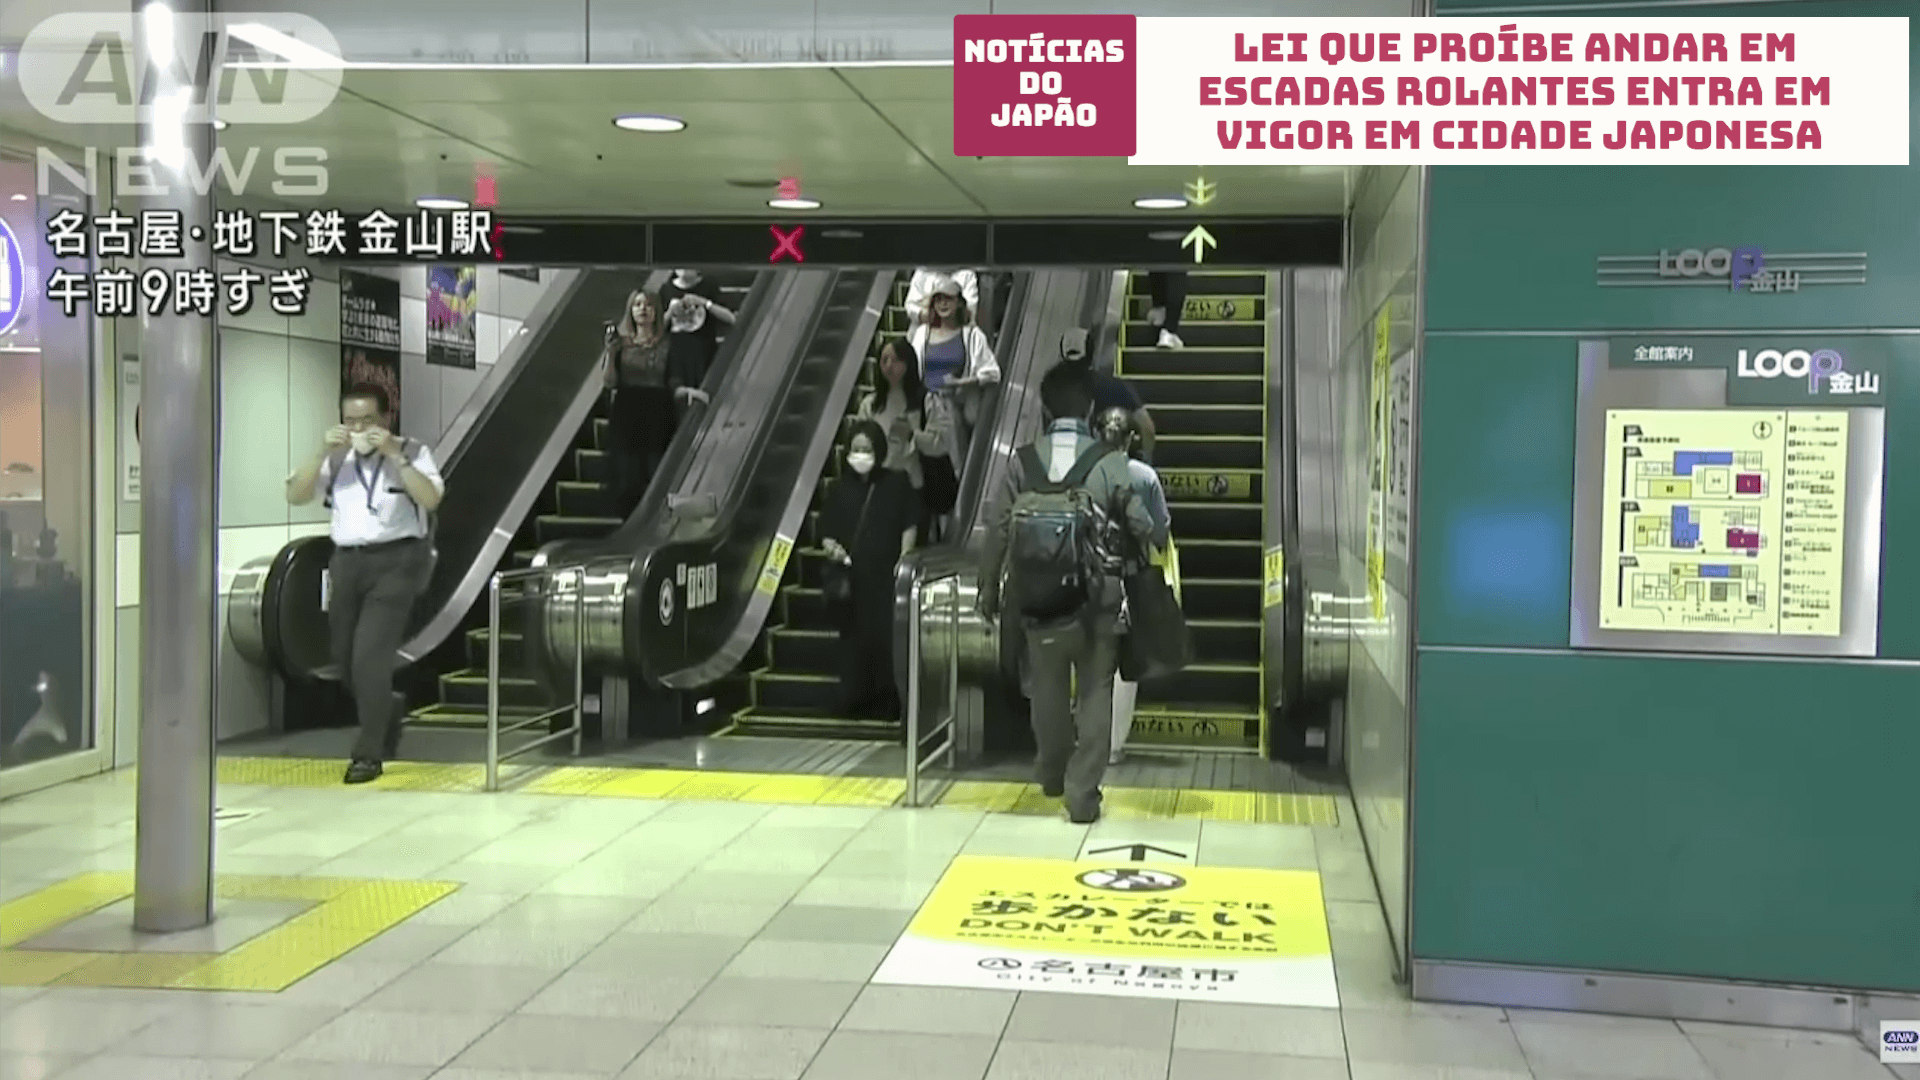 Lei que proíbe andar em escadas rolantes entra em vigor em cidade japonesa 